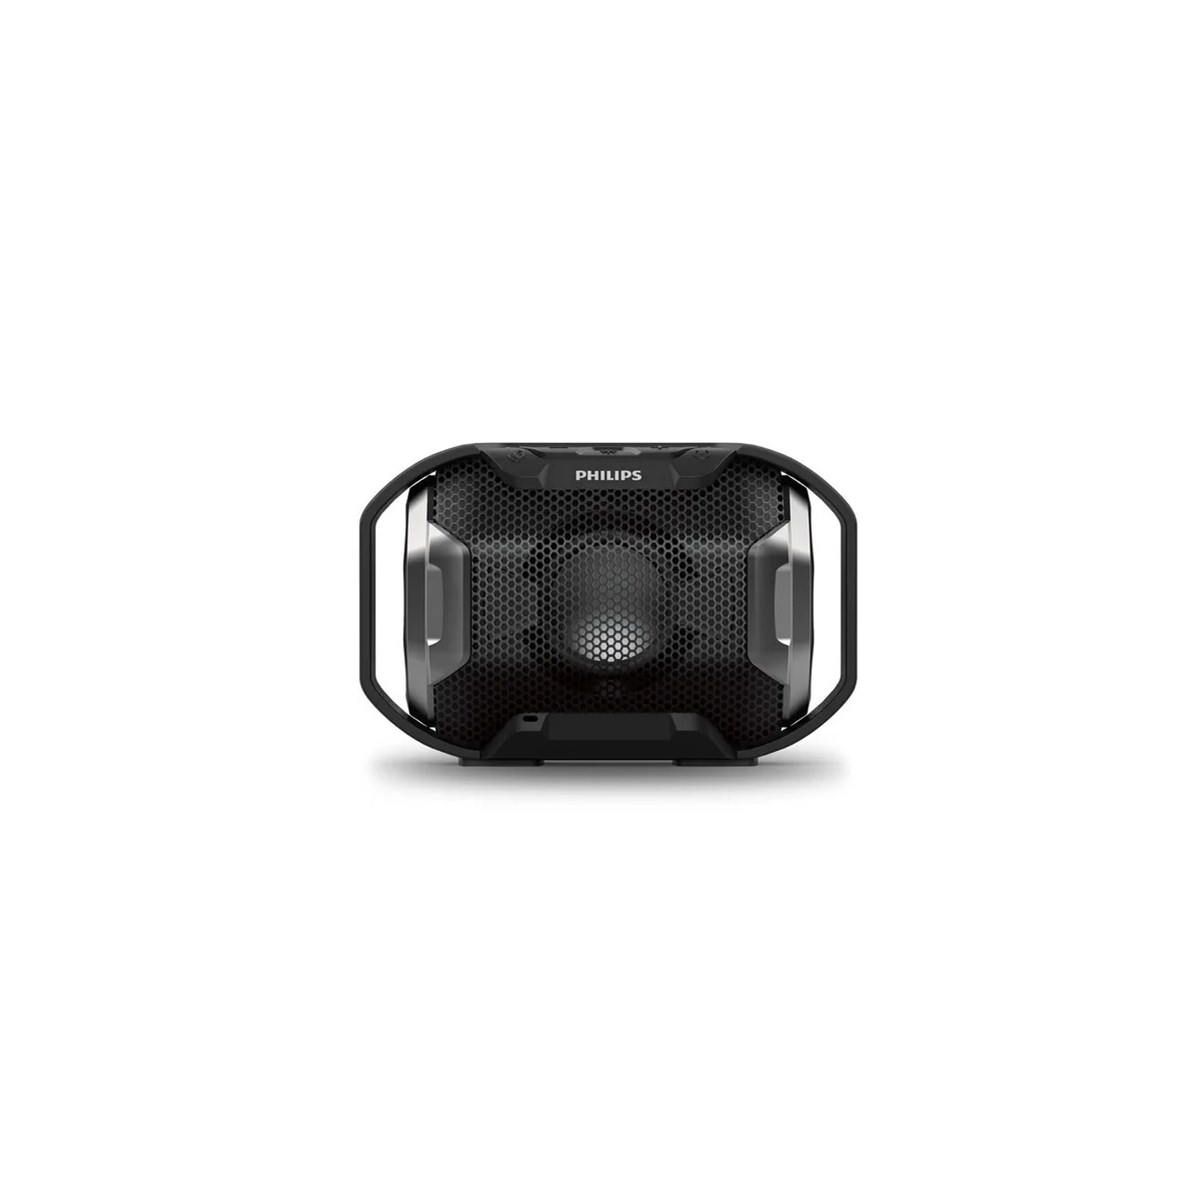 Caixa de Som Inteligente Alexa Echo Pop C2H4R9 Wi-Fi Bluetooth